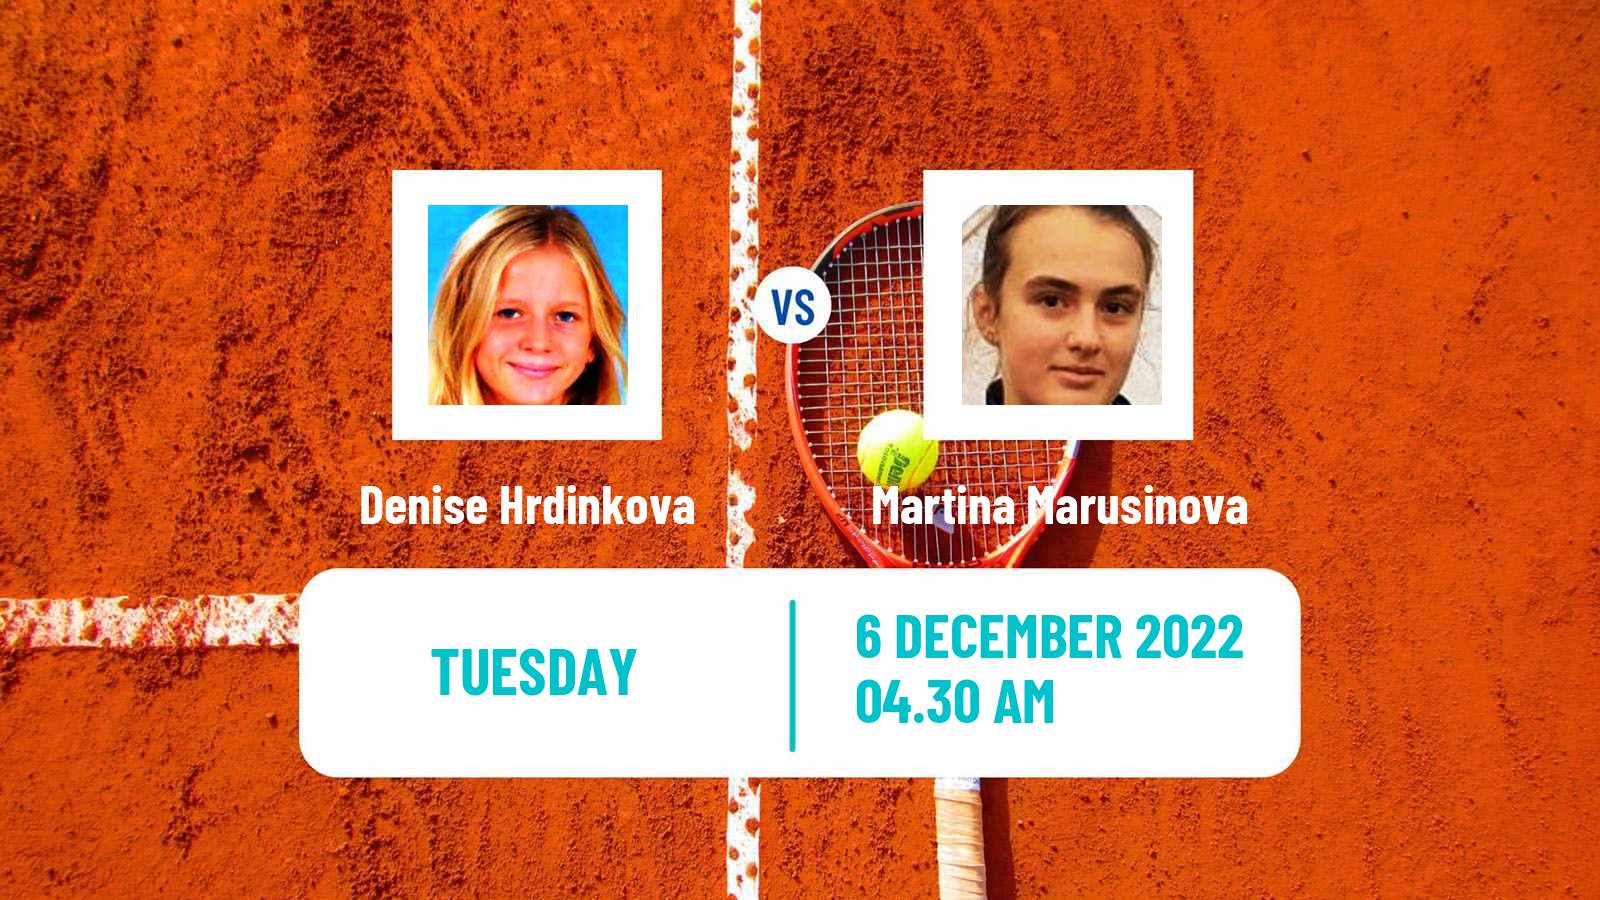 Tennis ITF Tournaments Denise Hrdinkova - Martina Marusinova